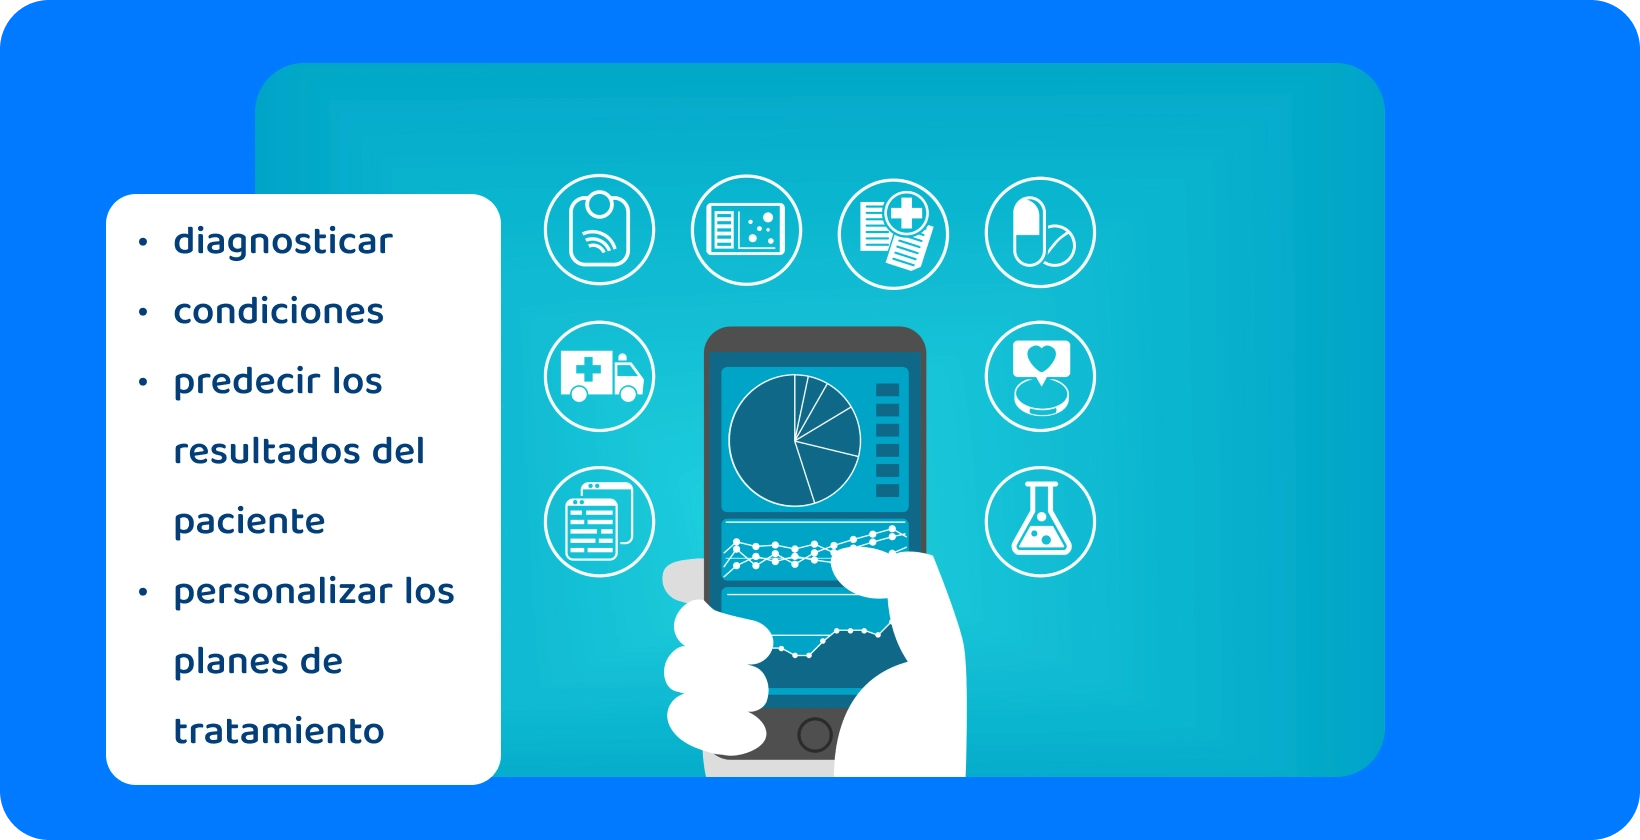 Una mano sosteniendo un teléfono inteligente que muestra un gráfico circular, rodeado de íconos que representan varios servicios de atención médica.